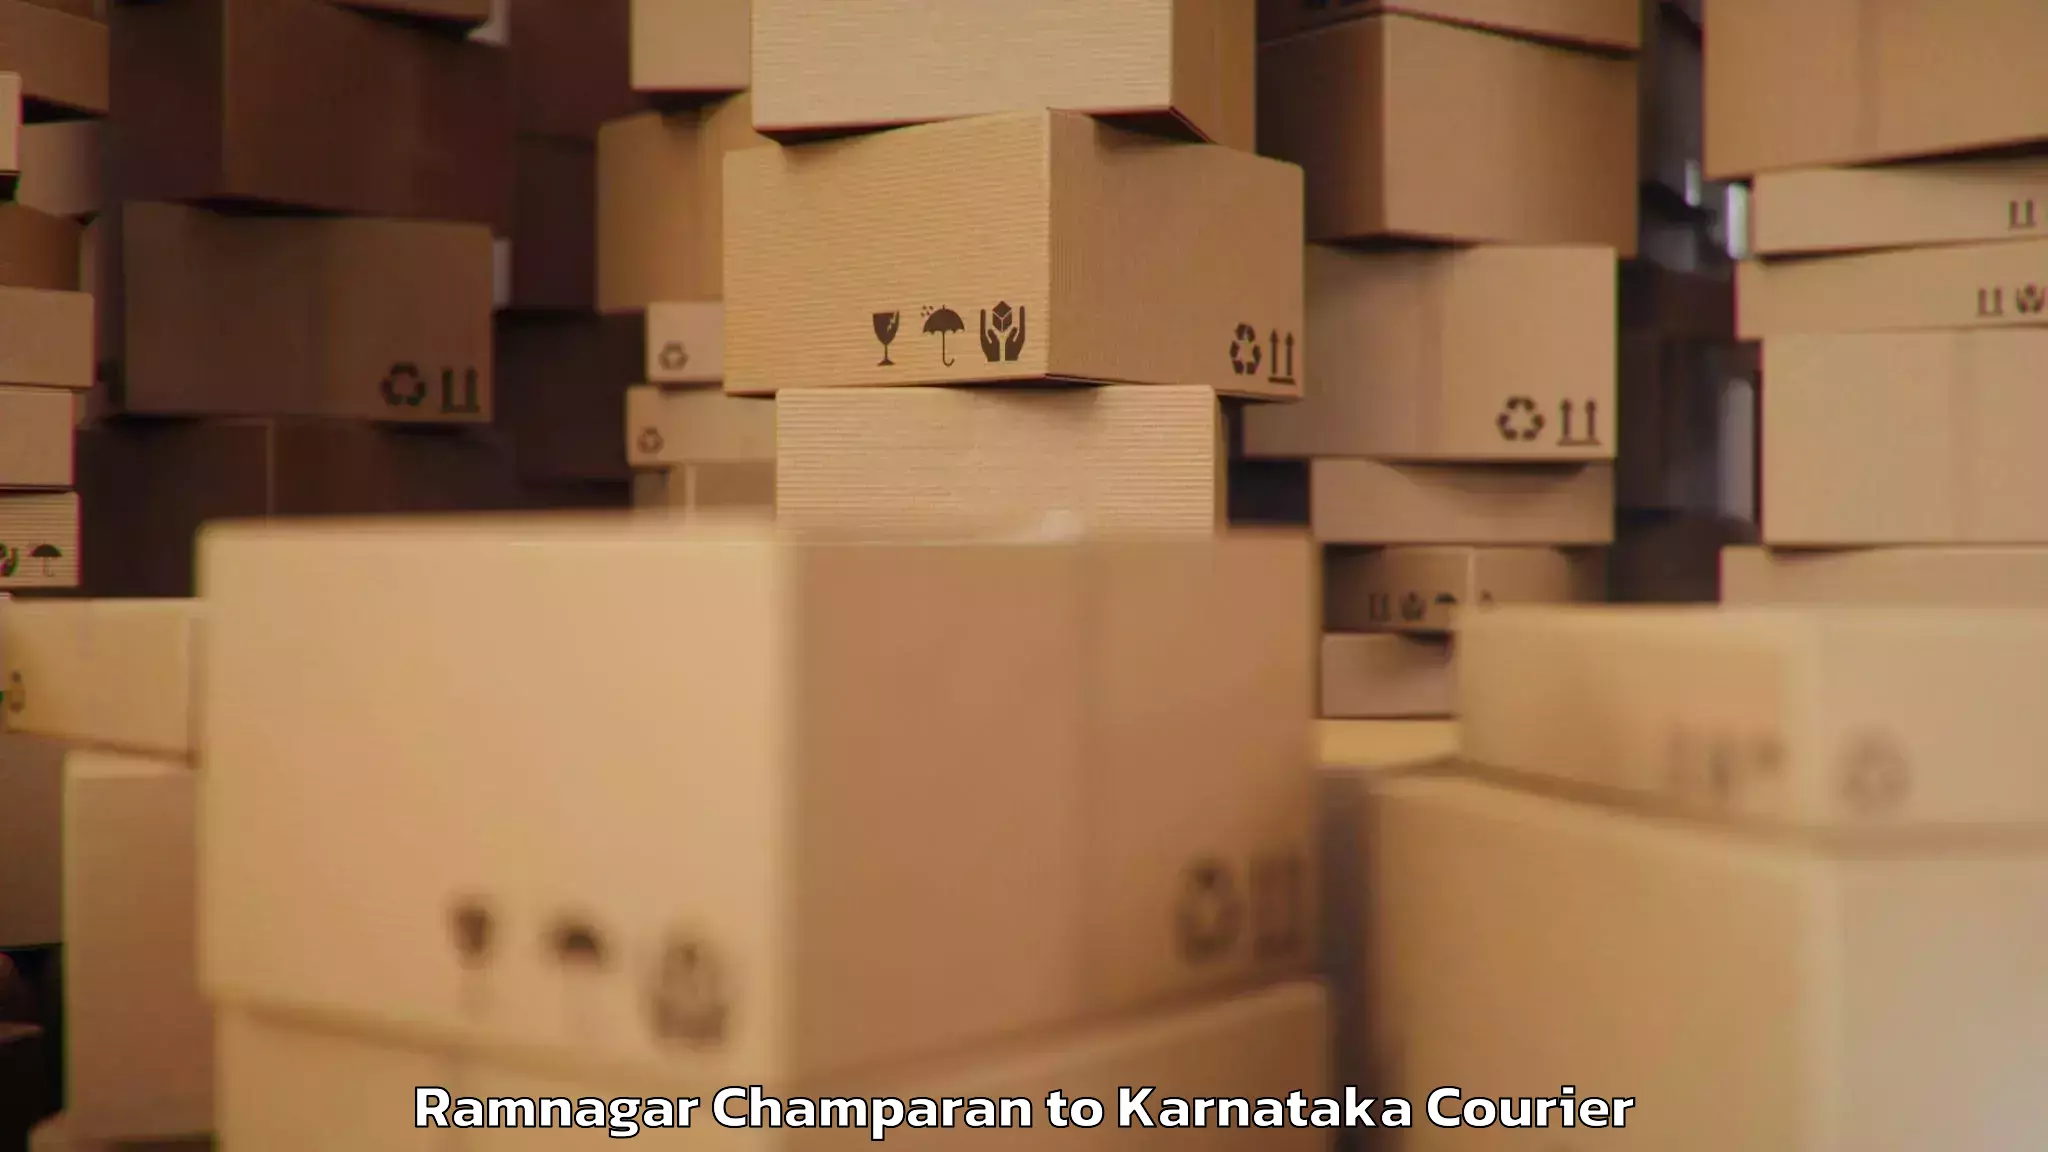 Baggage courier insights Ramnagar Champaran to Karnataka